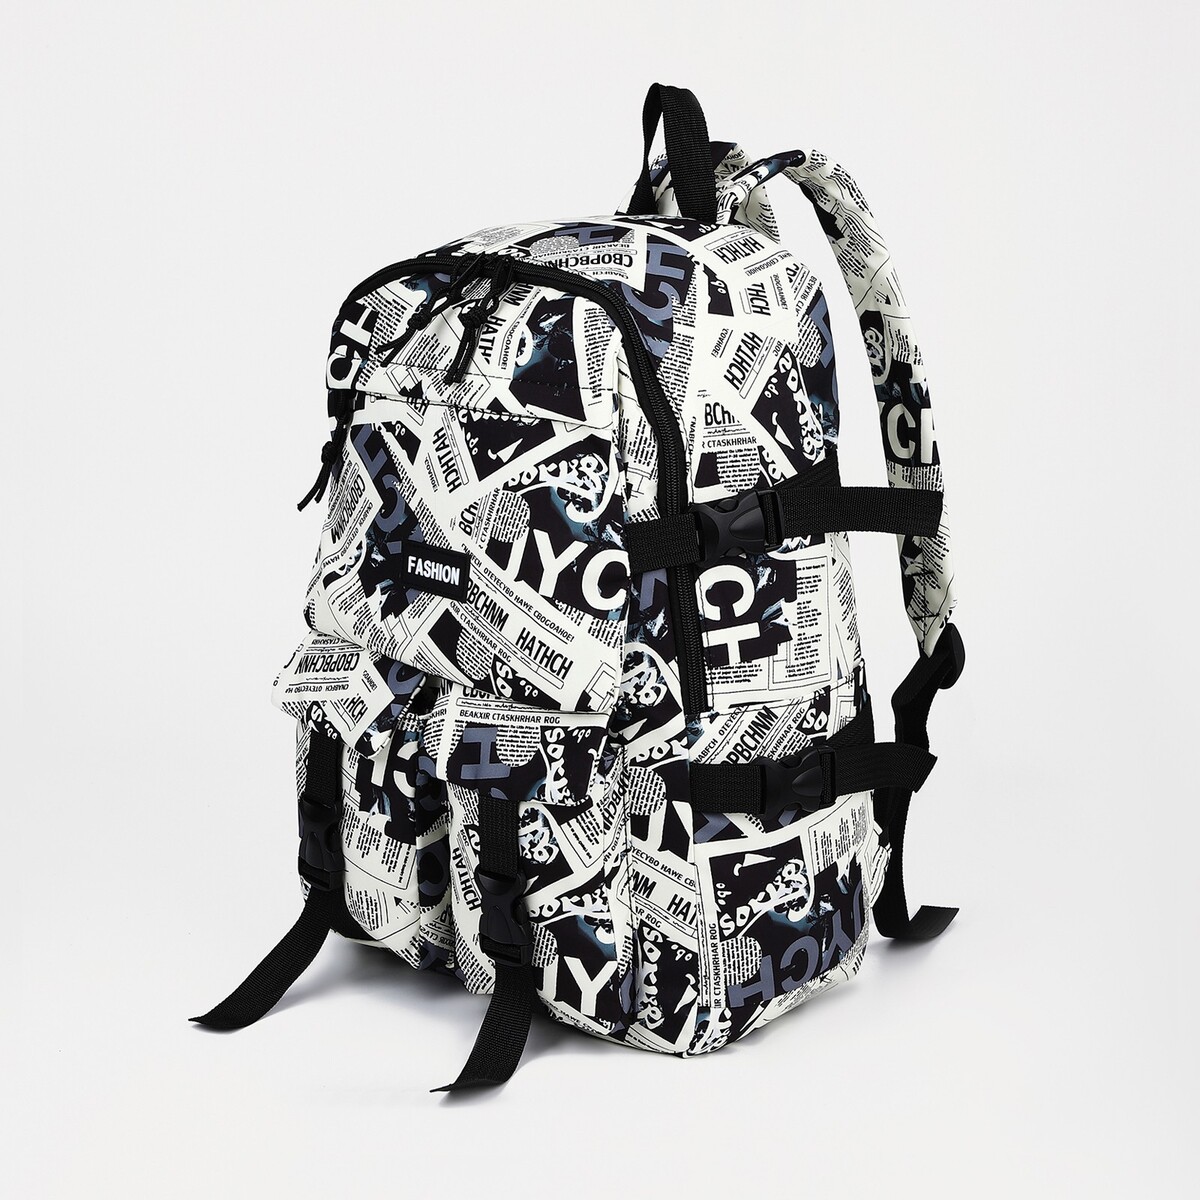 Рюкзак молодежный из текстиля на молнии, 3 кармана, цвет черный/белый рюкзак текстильный аниме 38х14х27 см белый